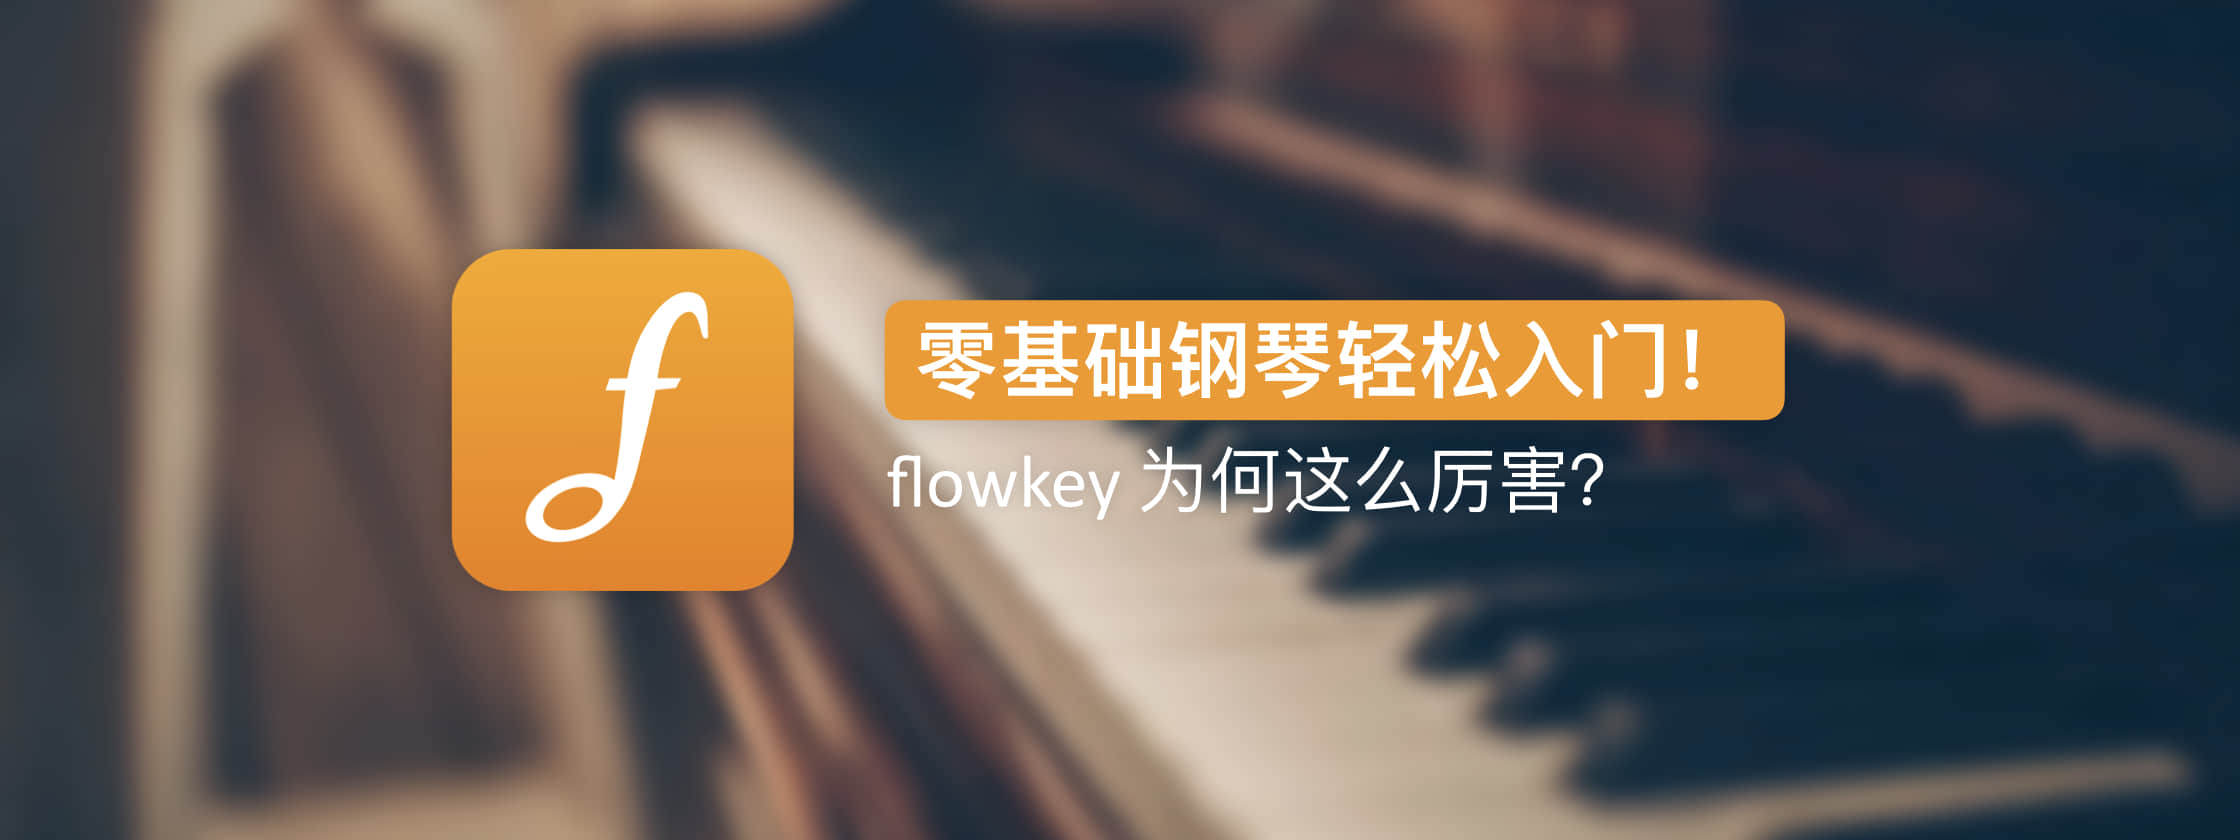 零基础钢琴轻松入门，flowkey 这款 App 为何这么厉害？